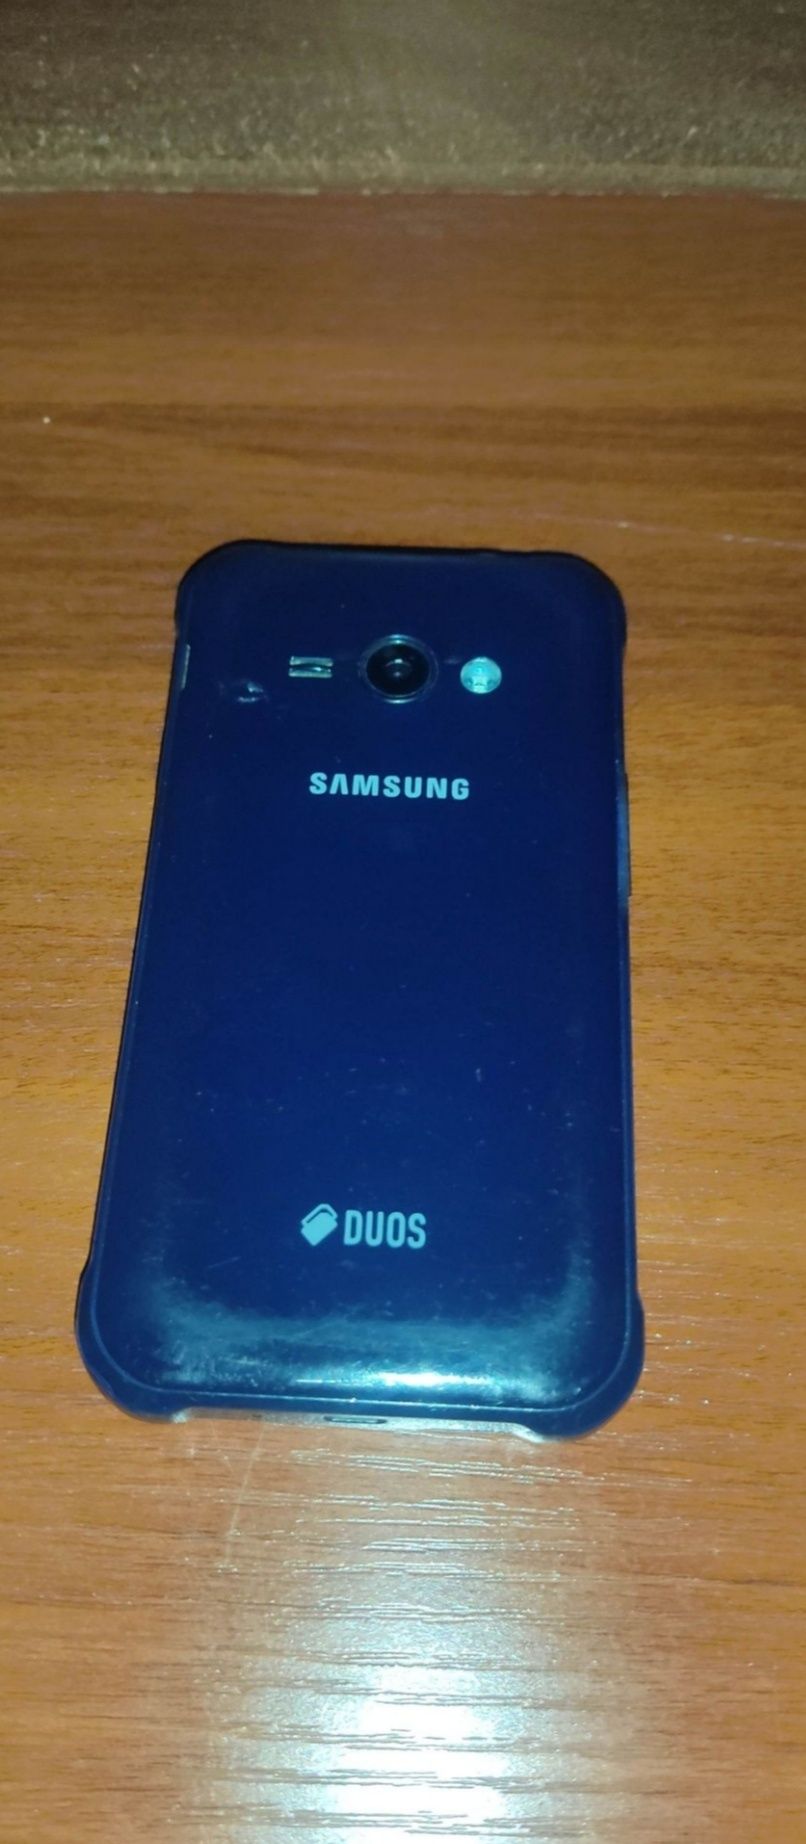 Samsung Galaxy J1 ace sotiladi